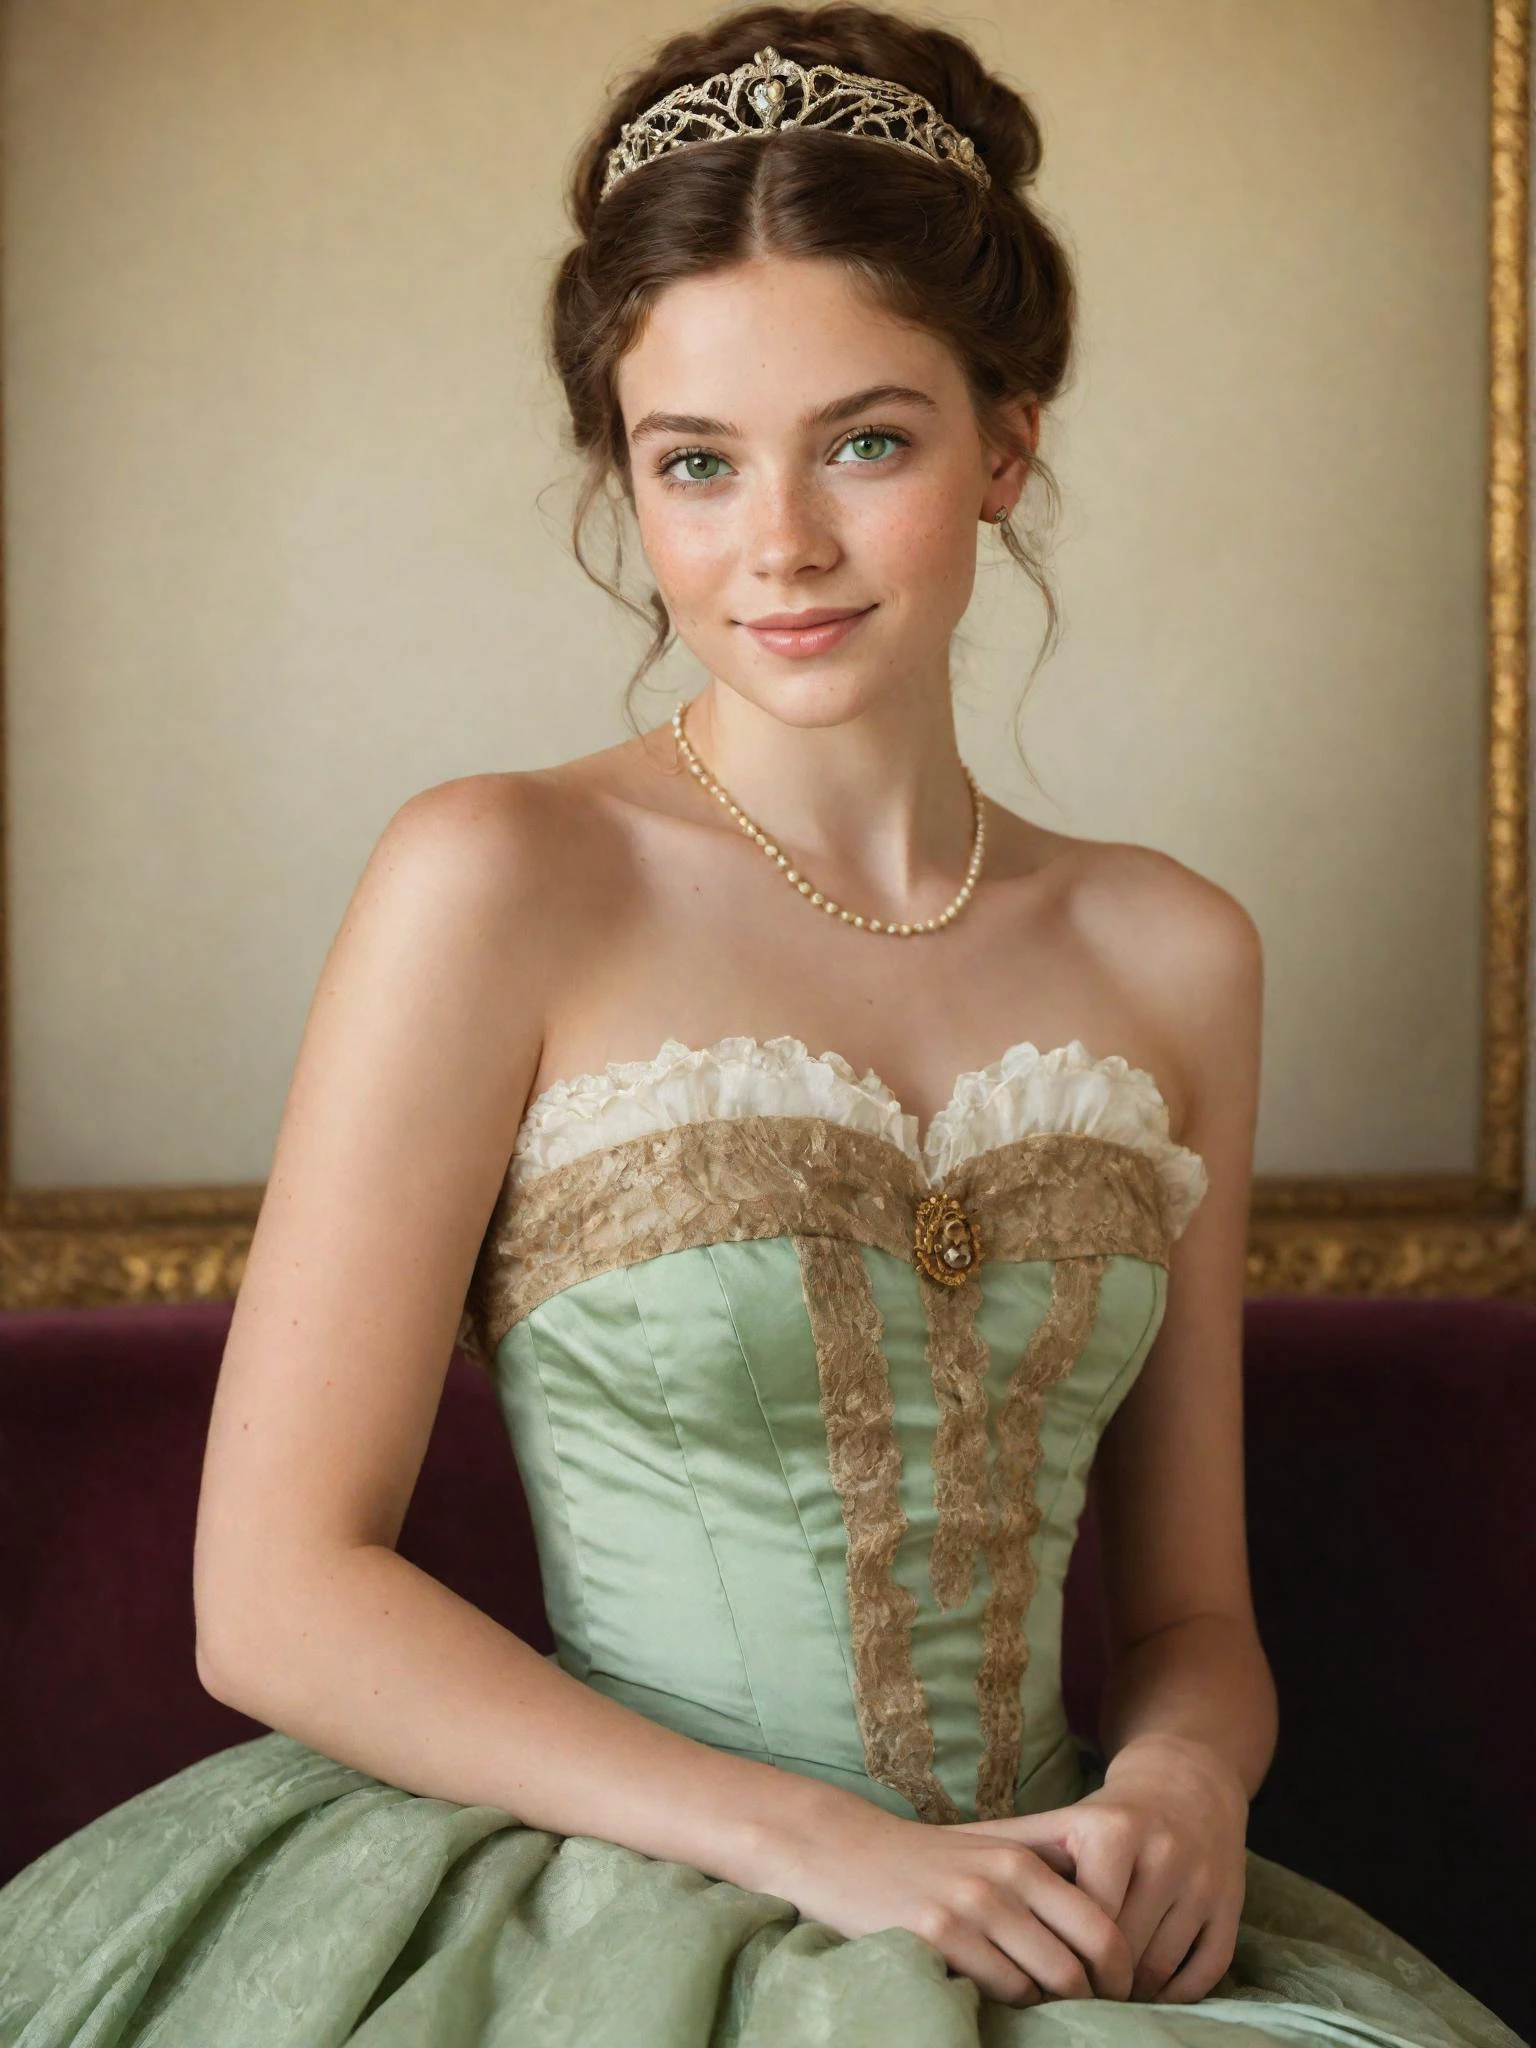 一位年轻的维多利亚公主的画像, 绿眼睛, 淡淡的微笑, 露肩礼服, 雀斑, 皮肤细节, 华丽的棕色头发, 业余偷拍